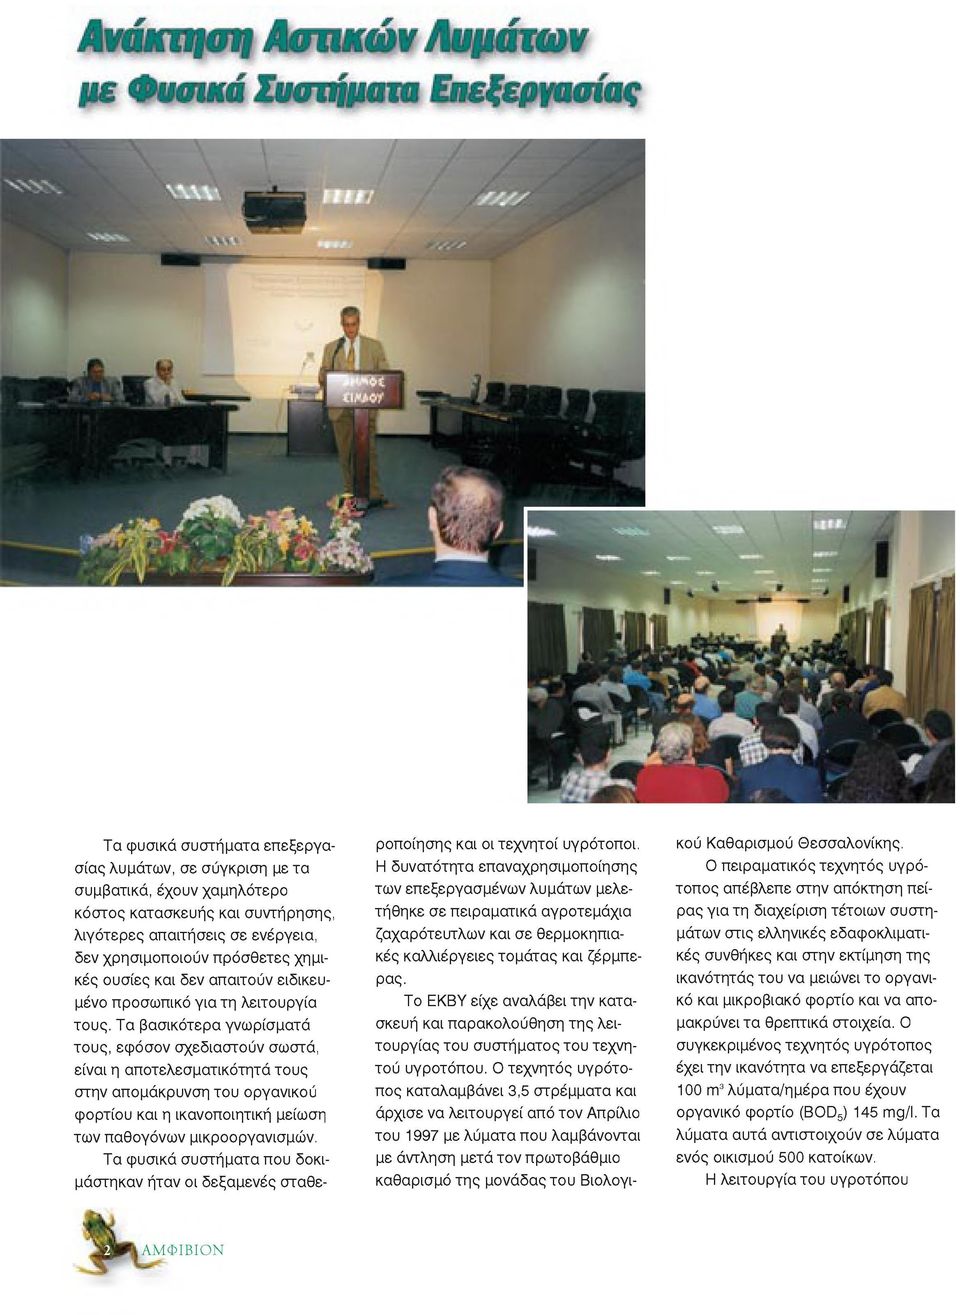 H διοργάνωση της ημερίδας έγινε από το Ινστιτούτο Εδαφολογίας Θεσσαλονίκης του ΕΘΙΑΓΕ σε συνεργασία με το EKBY και με τη στήριξη διαφόρων φορέων.